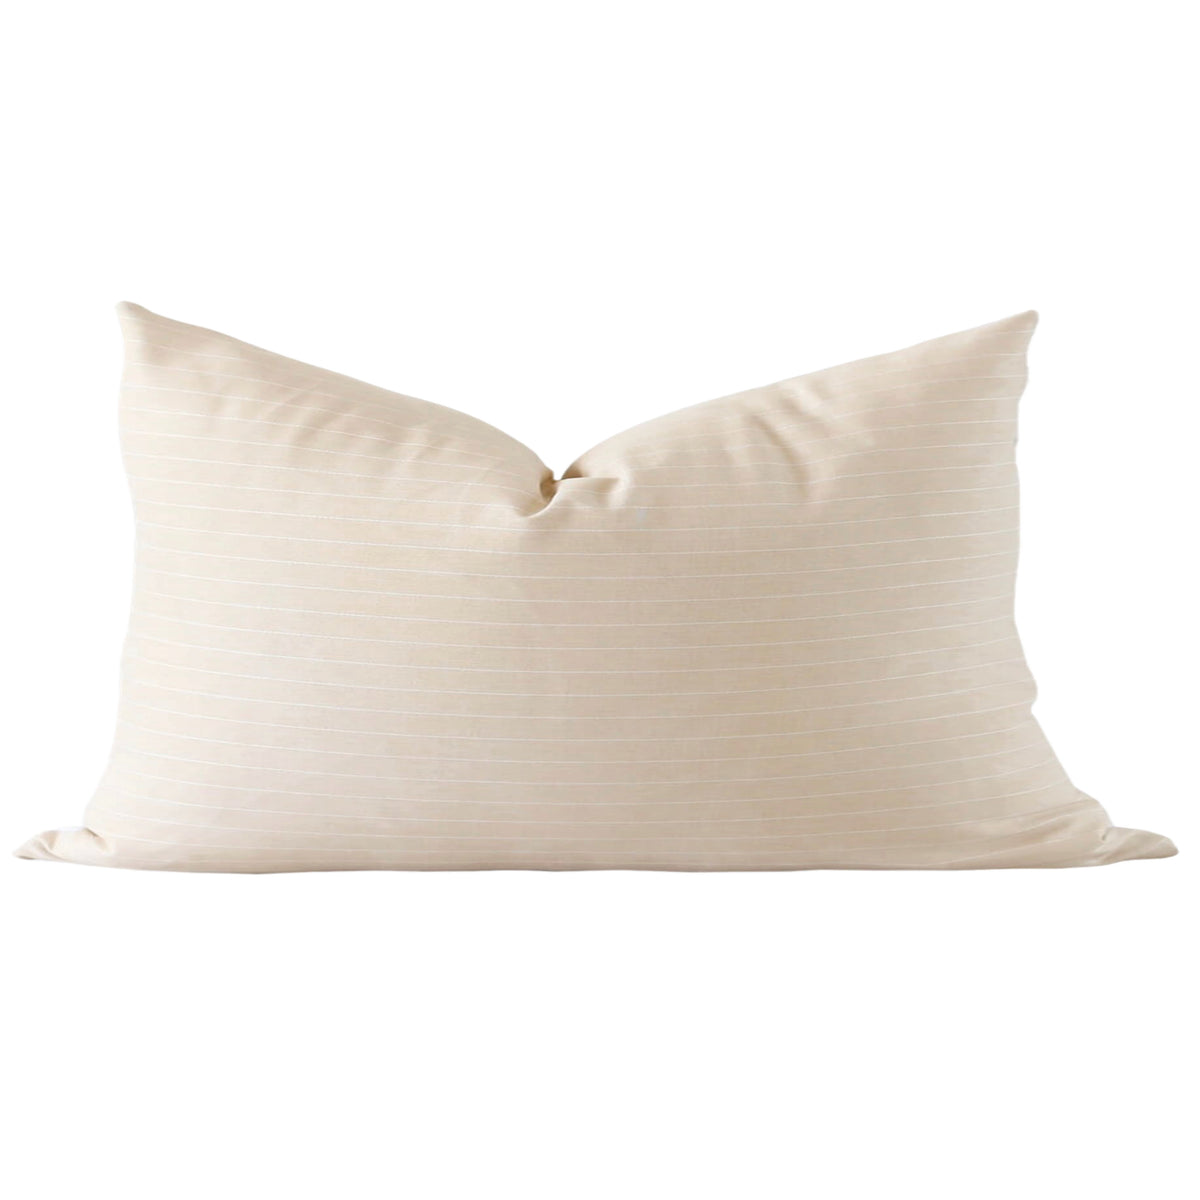 Thomas Stripe Pillow Cover